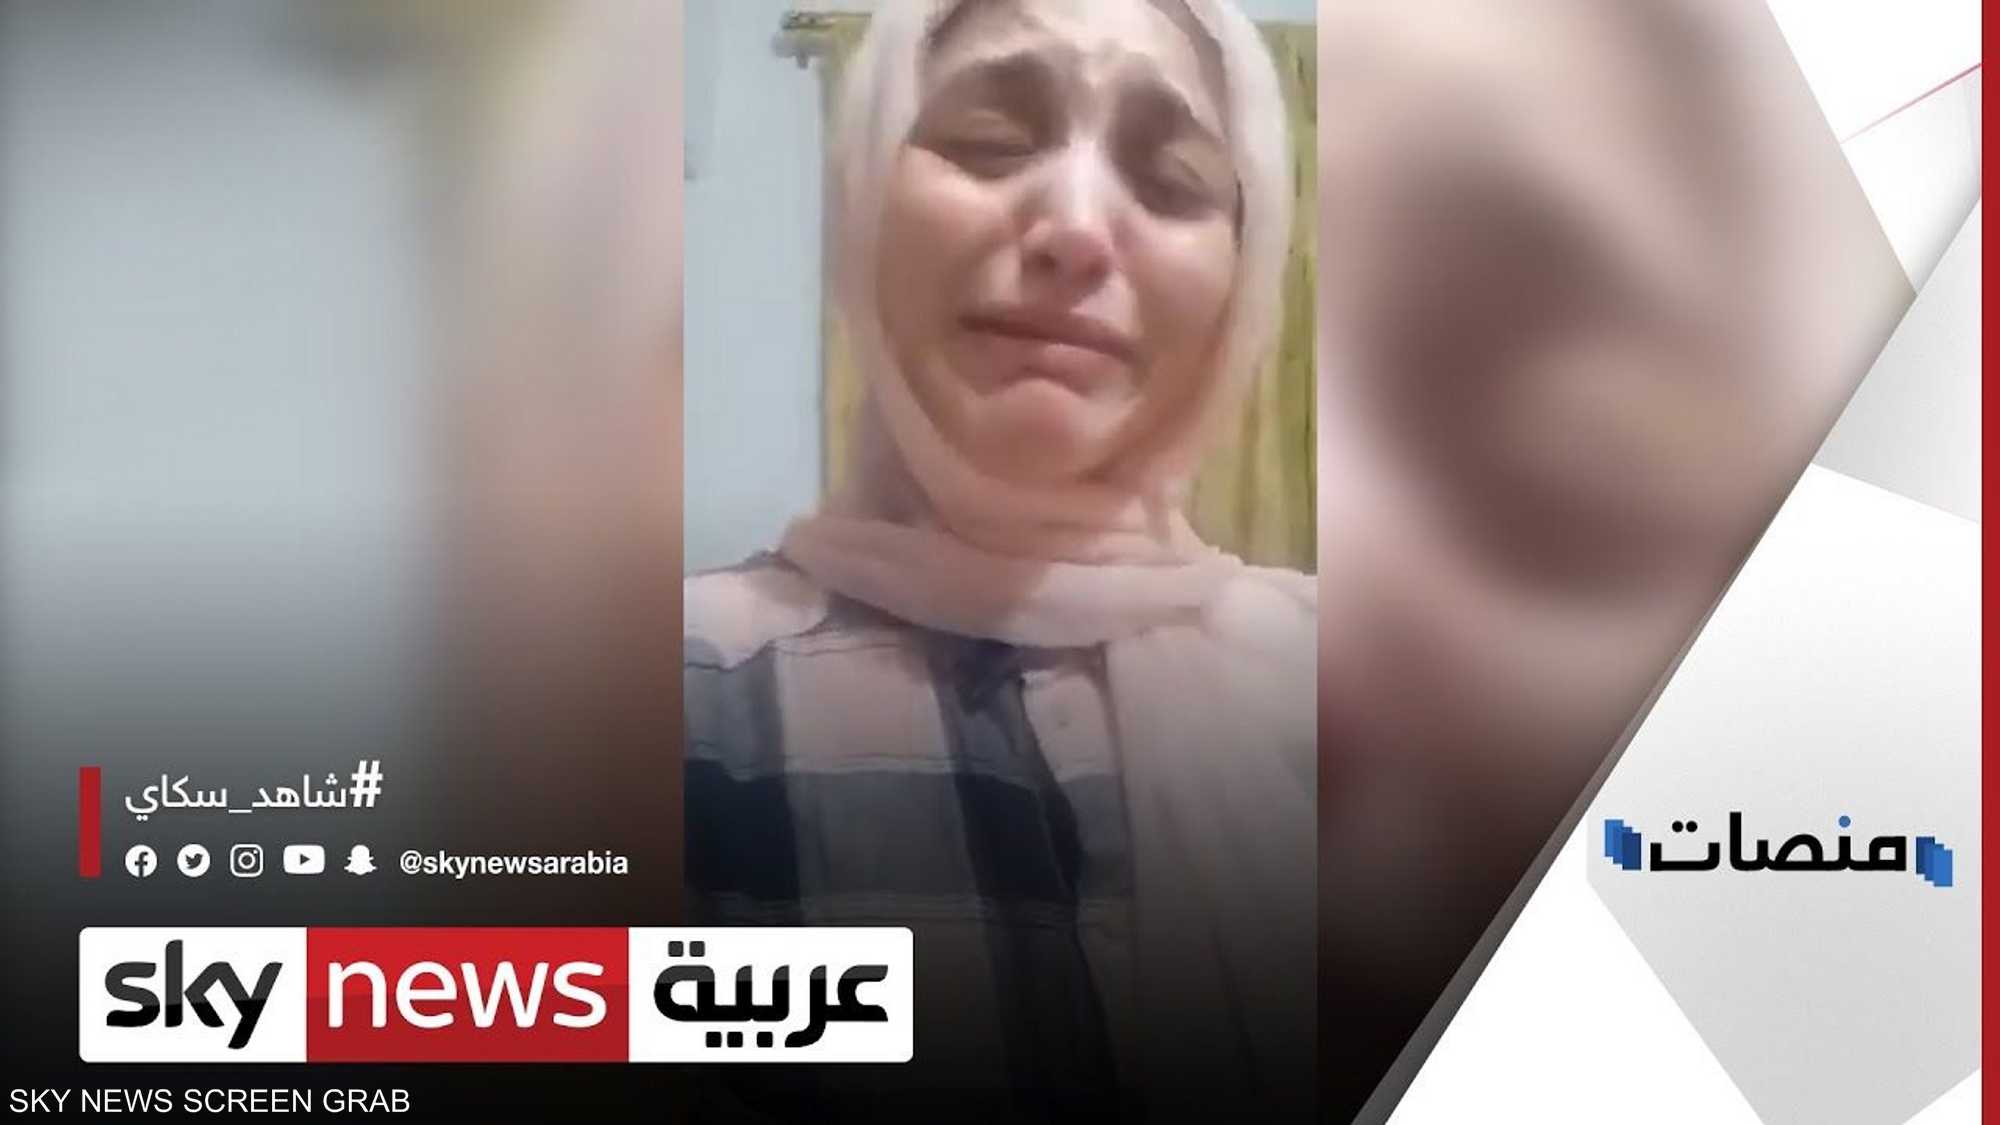 بعد استغاثة "فتاة طما" الداخلية المصرية تعلن تصفية مجرم خطير